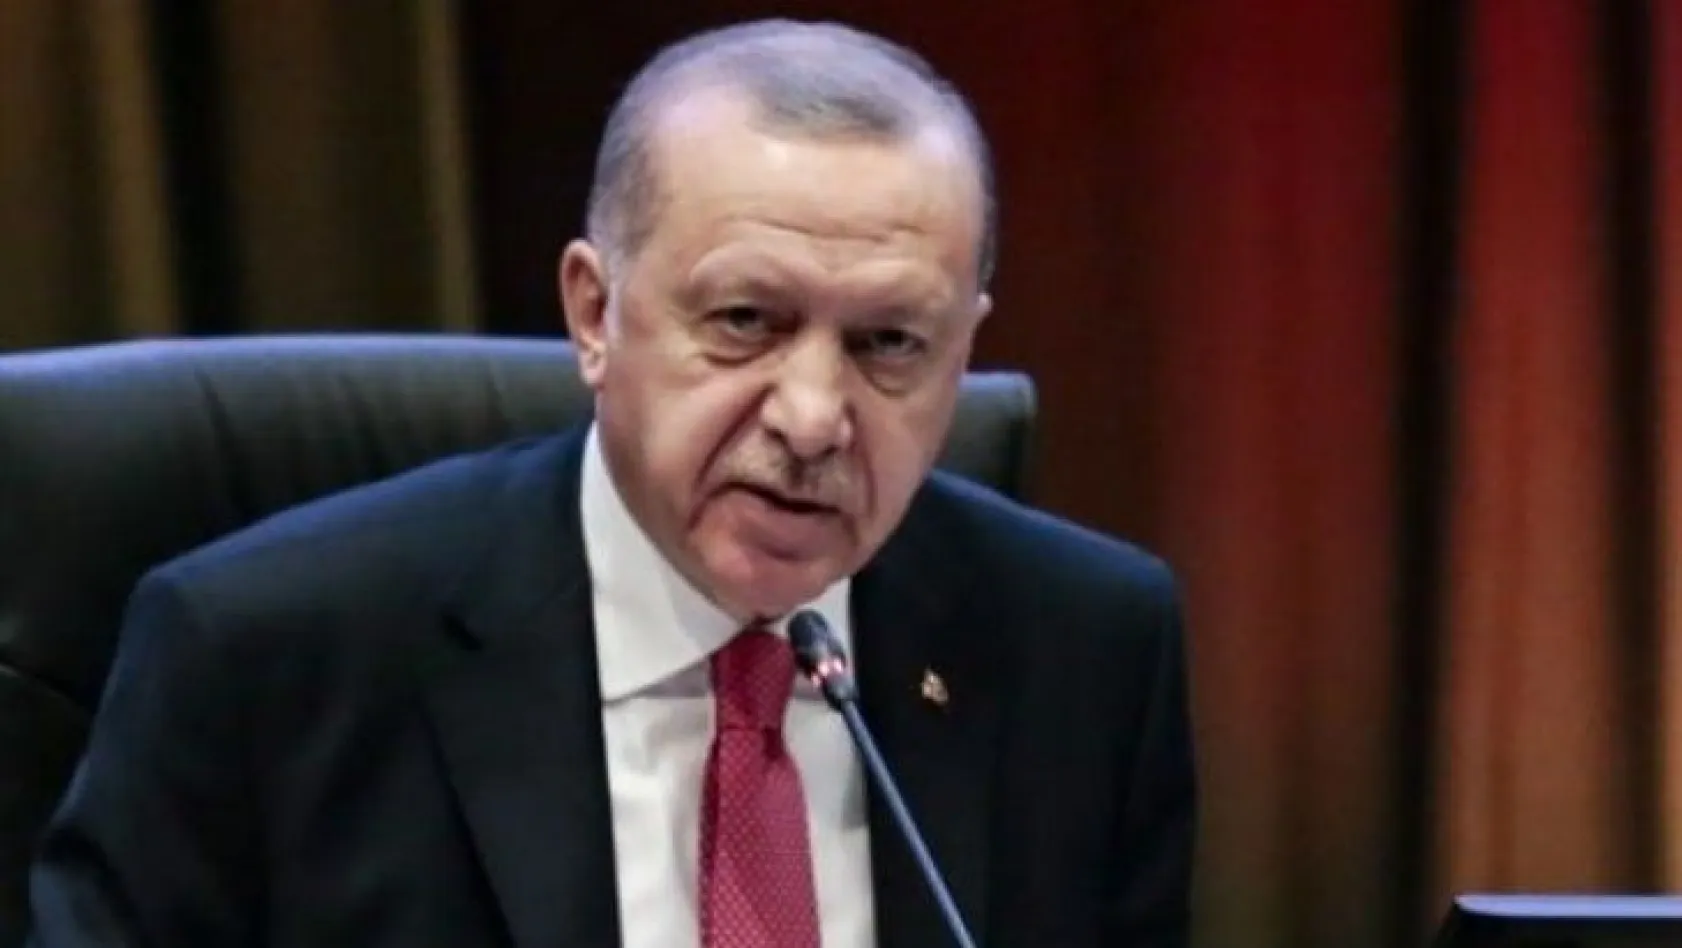 Cumhurbaşkanı Erdoğan'dan 3 müjde